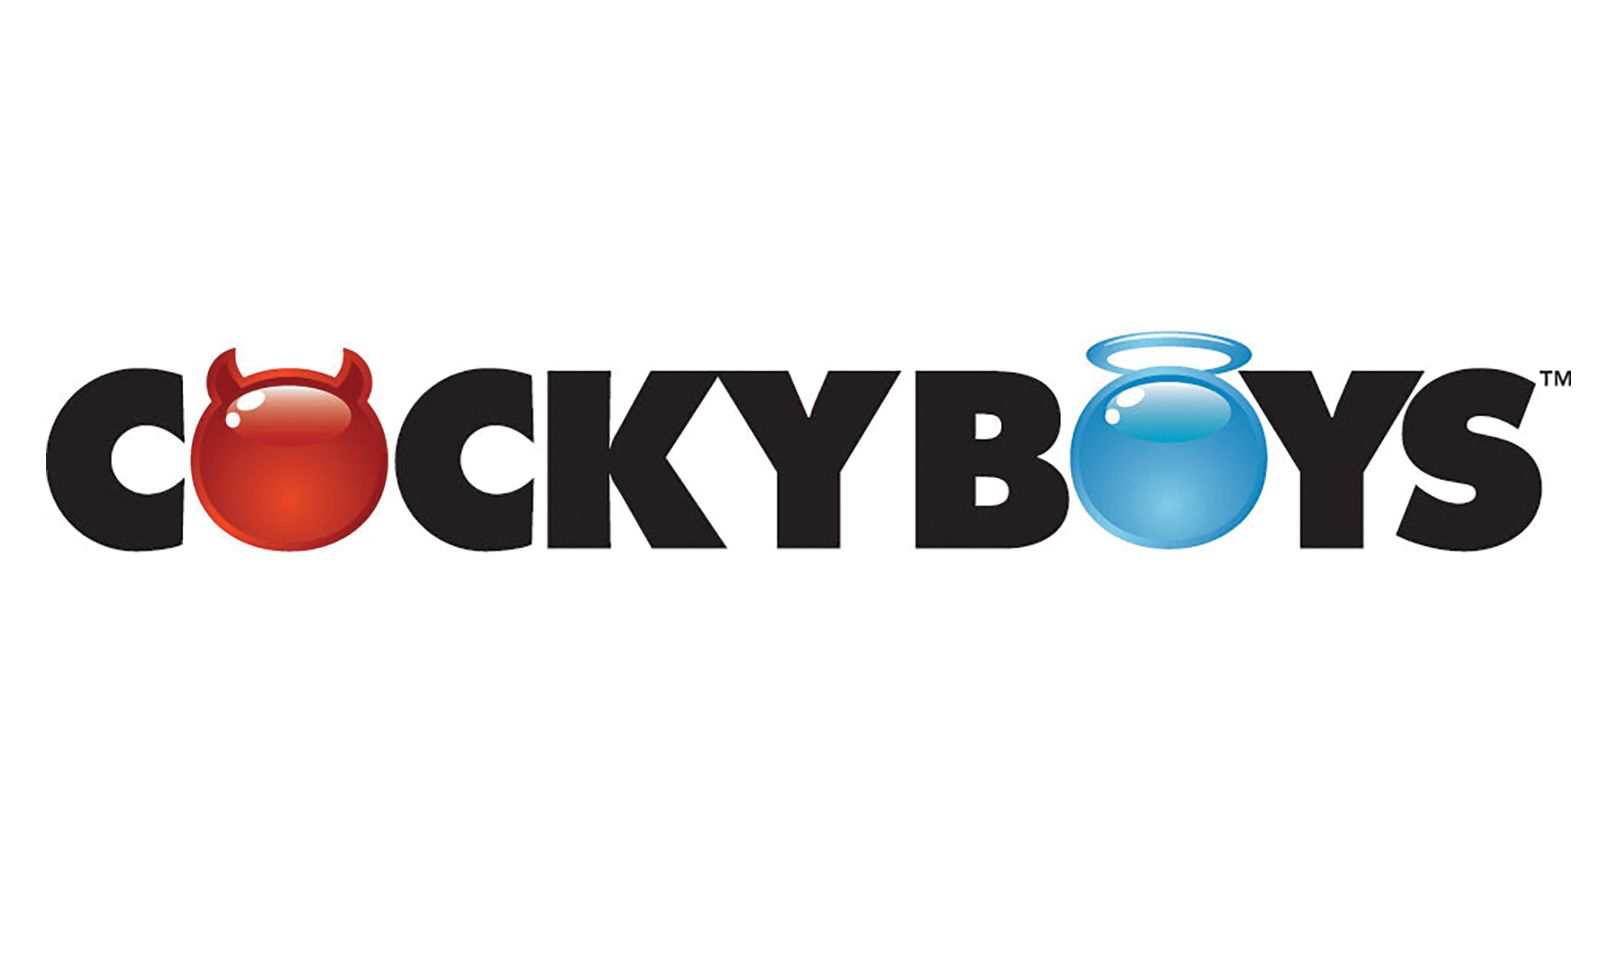 CockyBoys Expands into European Market